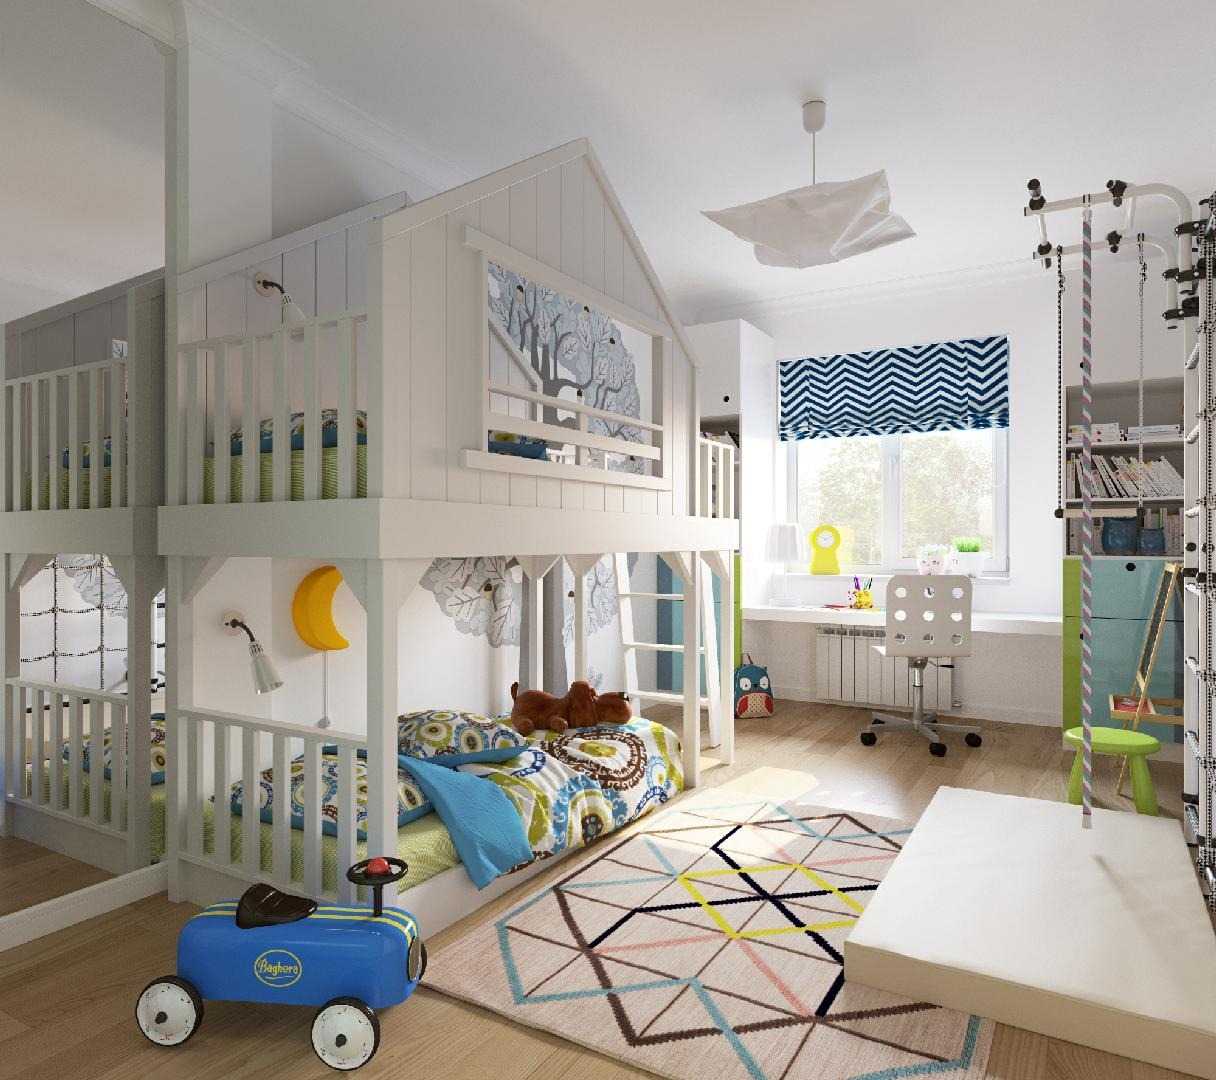 Детские комнаты для мальчиков - идеи оформления с фото Варианты дизайна с учетом возраста и предпочтений Примеры реальных комнат в спортивном, морском и космическом стилях